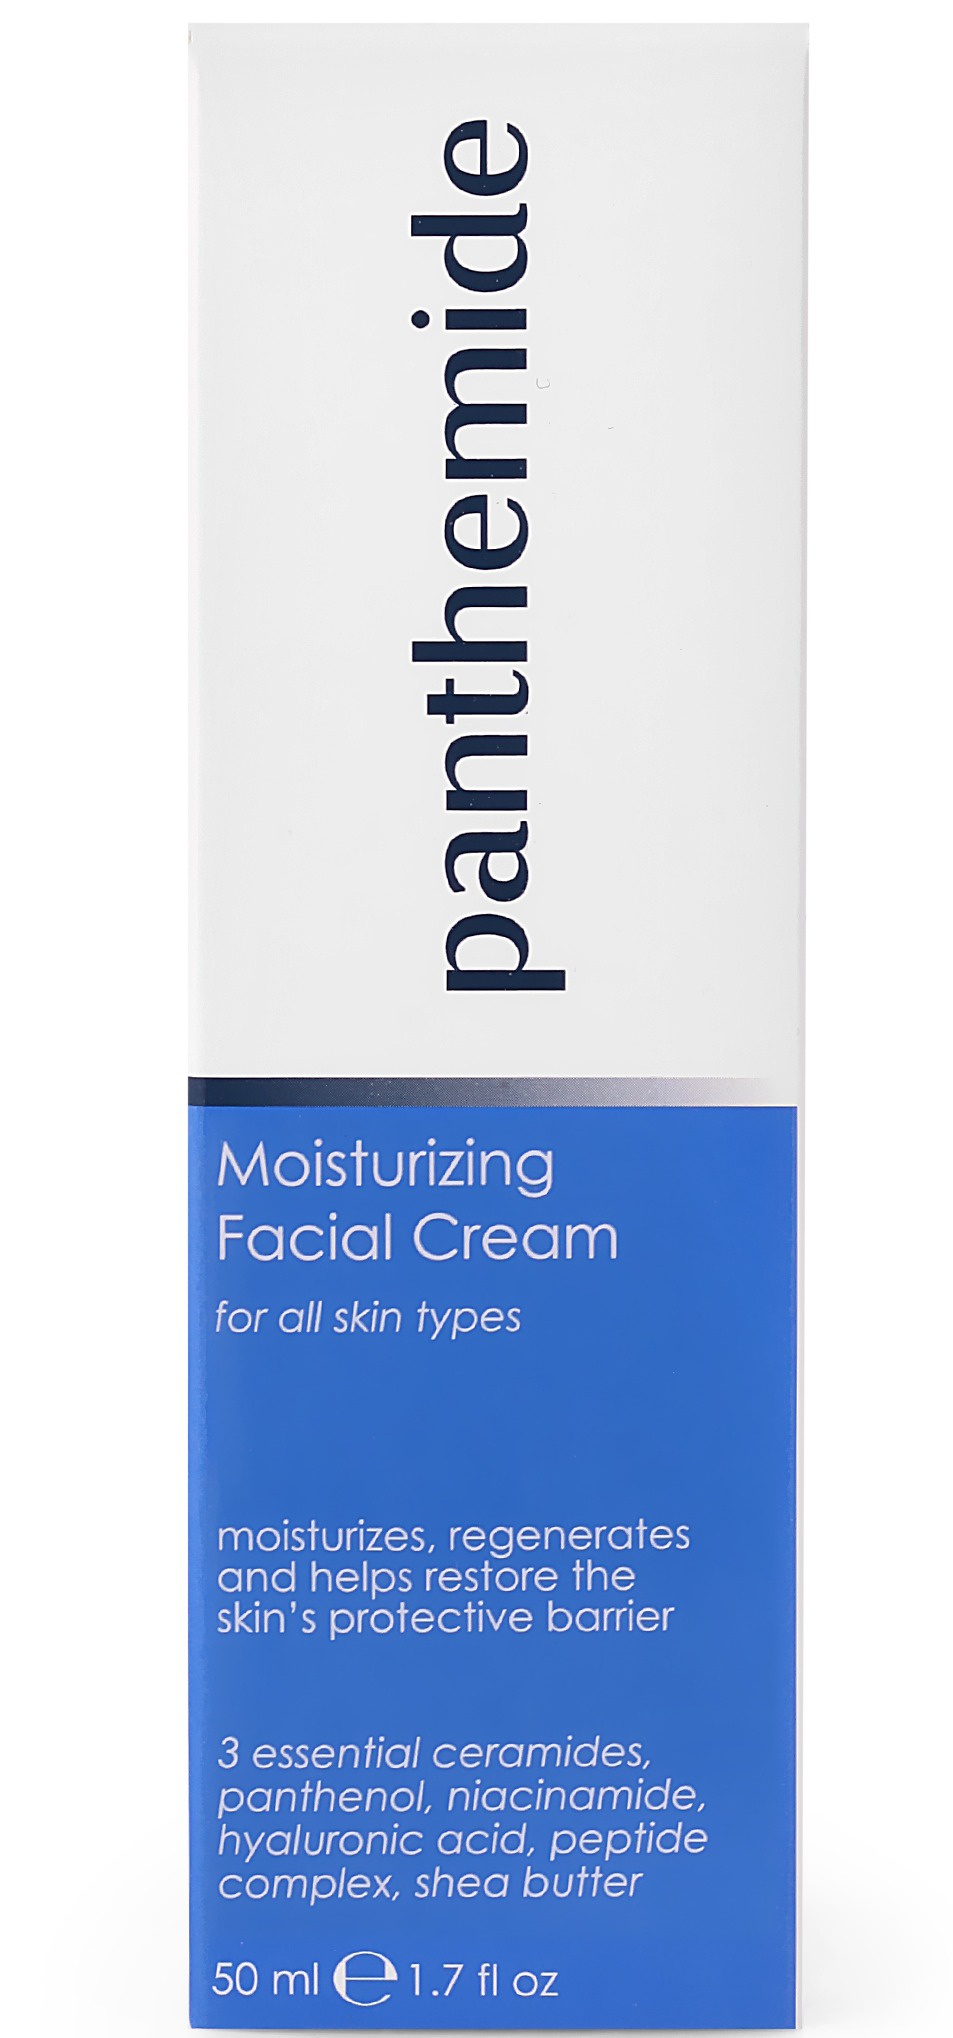 Panthemide Moisturizing Facial Cream